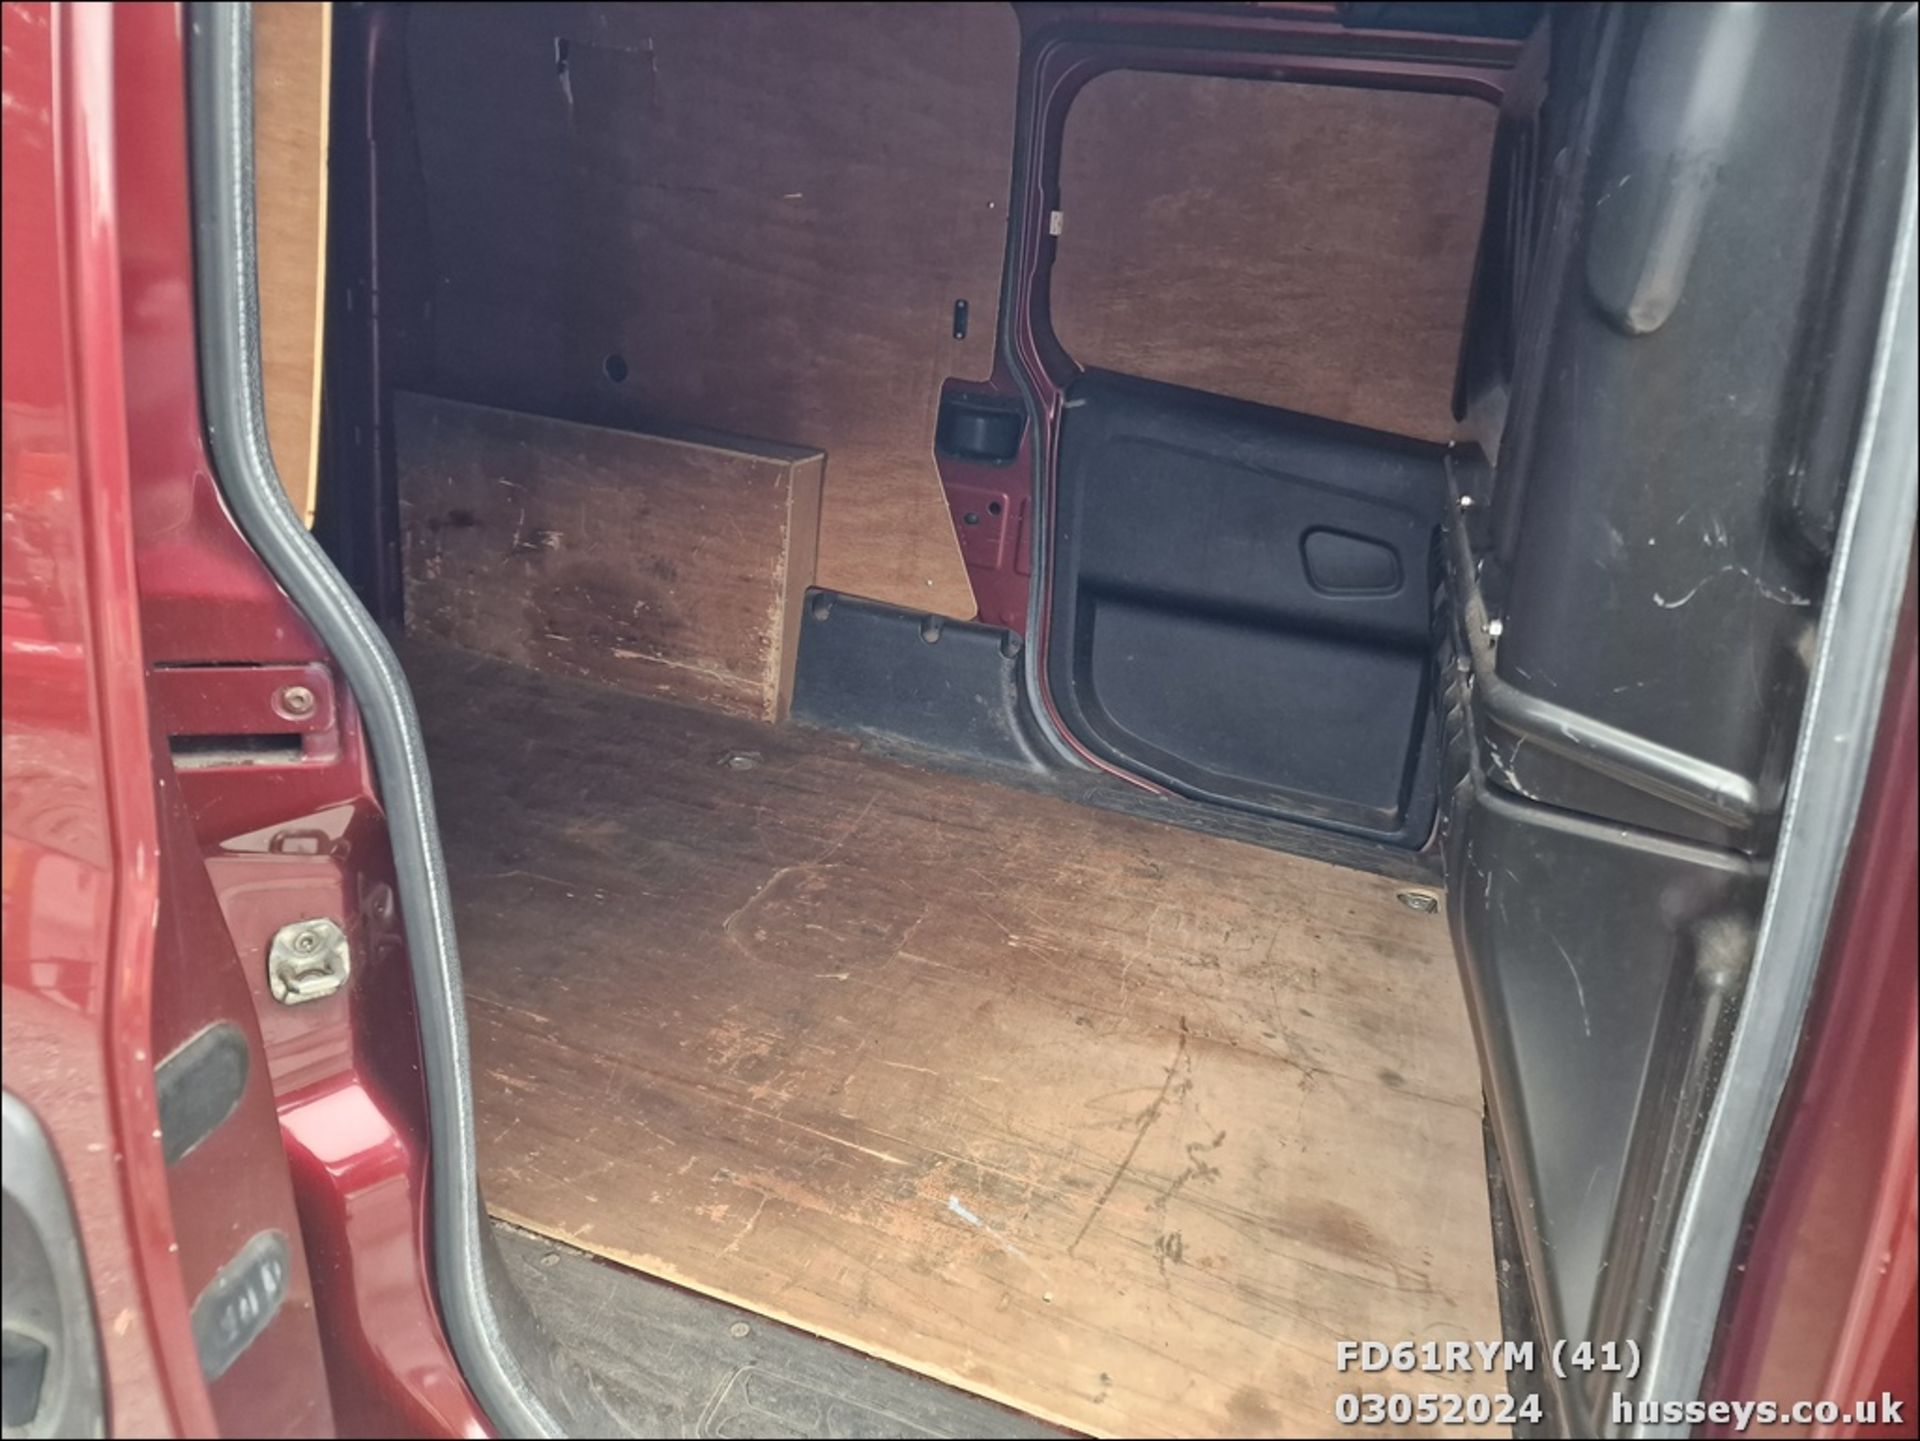 12/61 FIAT DOBLO 16V MULTIJET - 1956cc 6dr Van (Red, 187k) - Image 42 of 48